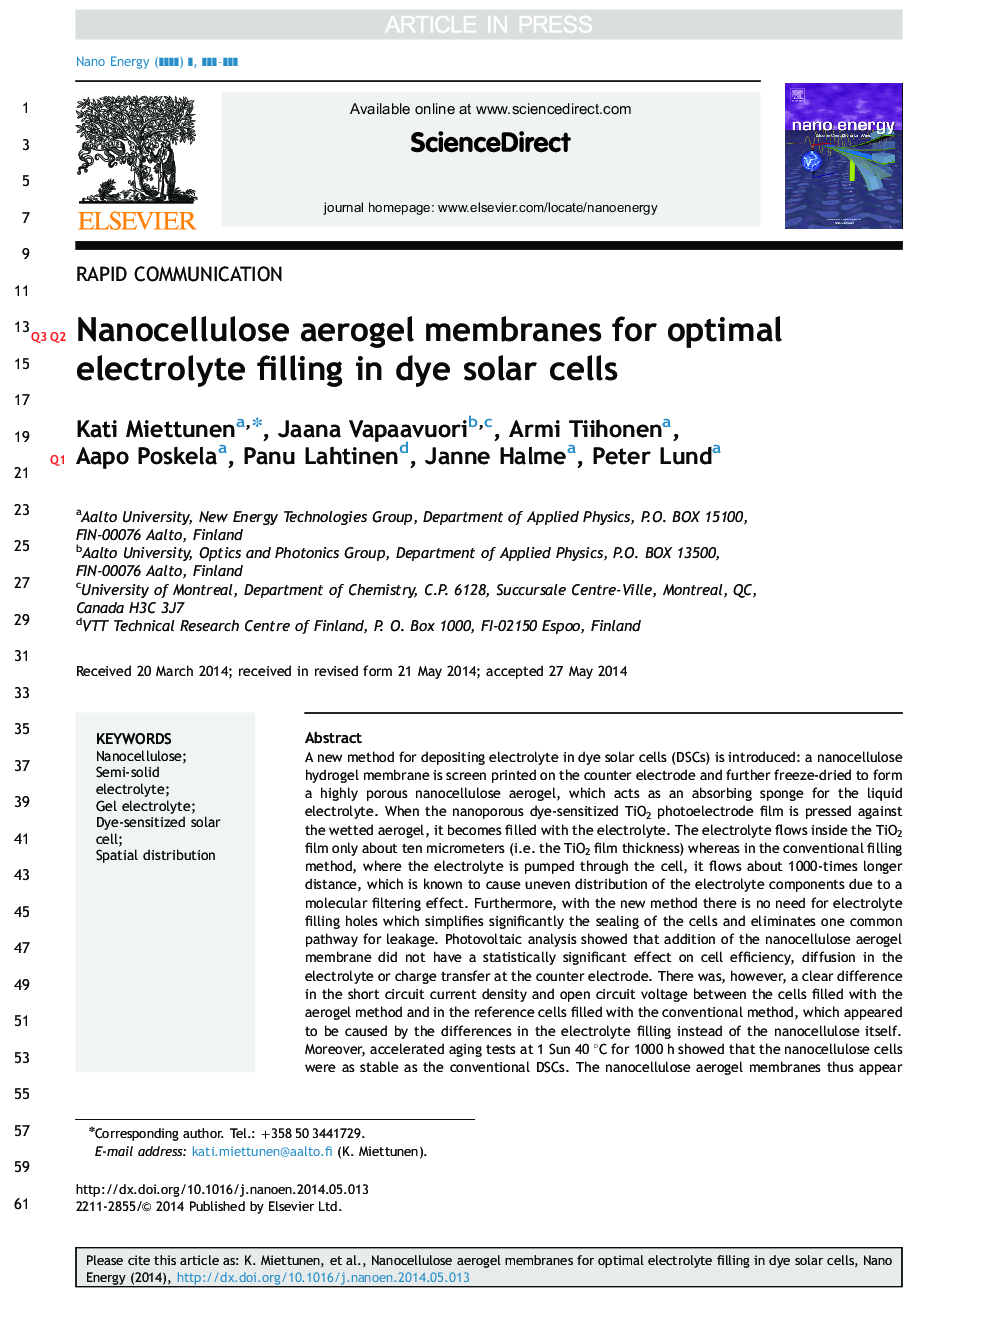 غشای آئروژل نانوسلولوز برای پر کردن الکترولیت بهینه در سلول های خورشیدی رنگی 